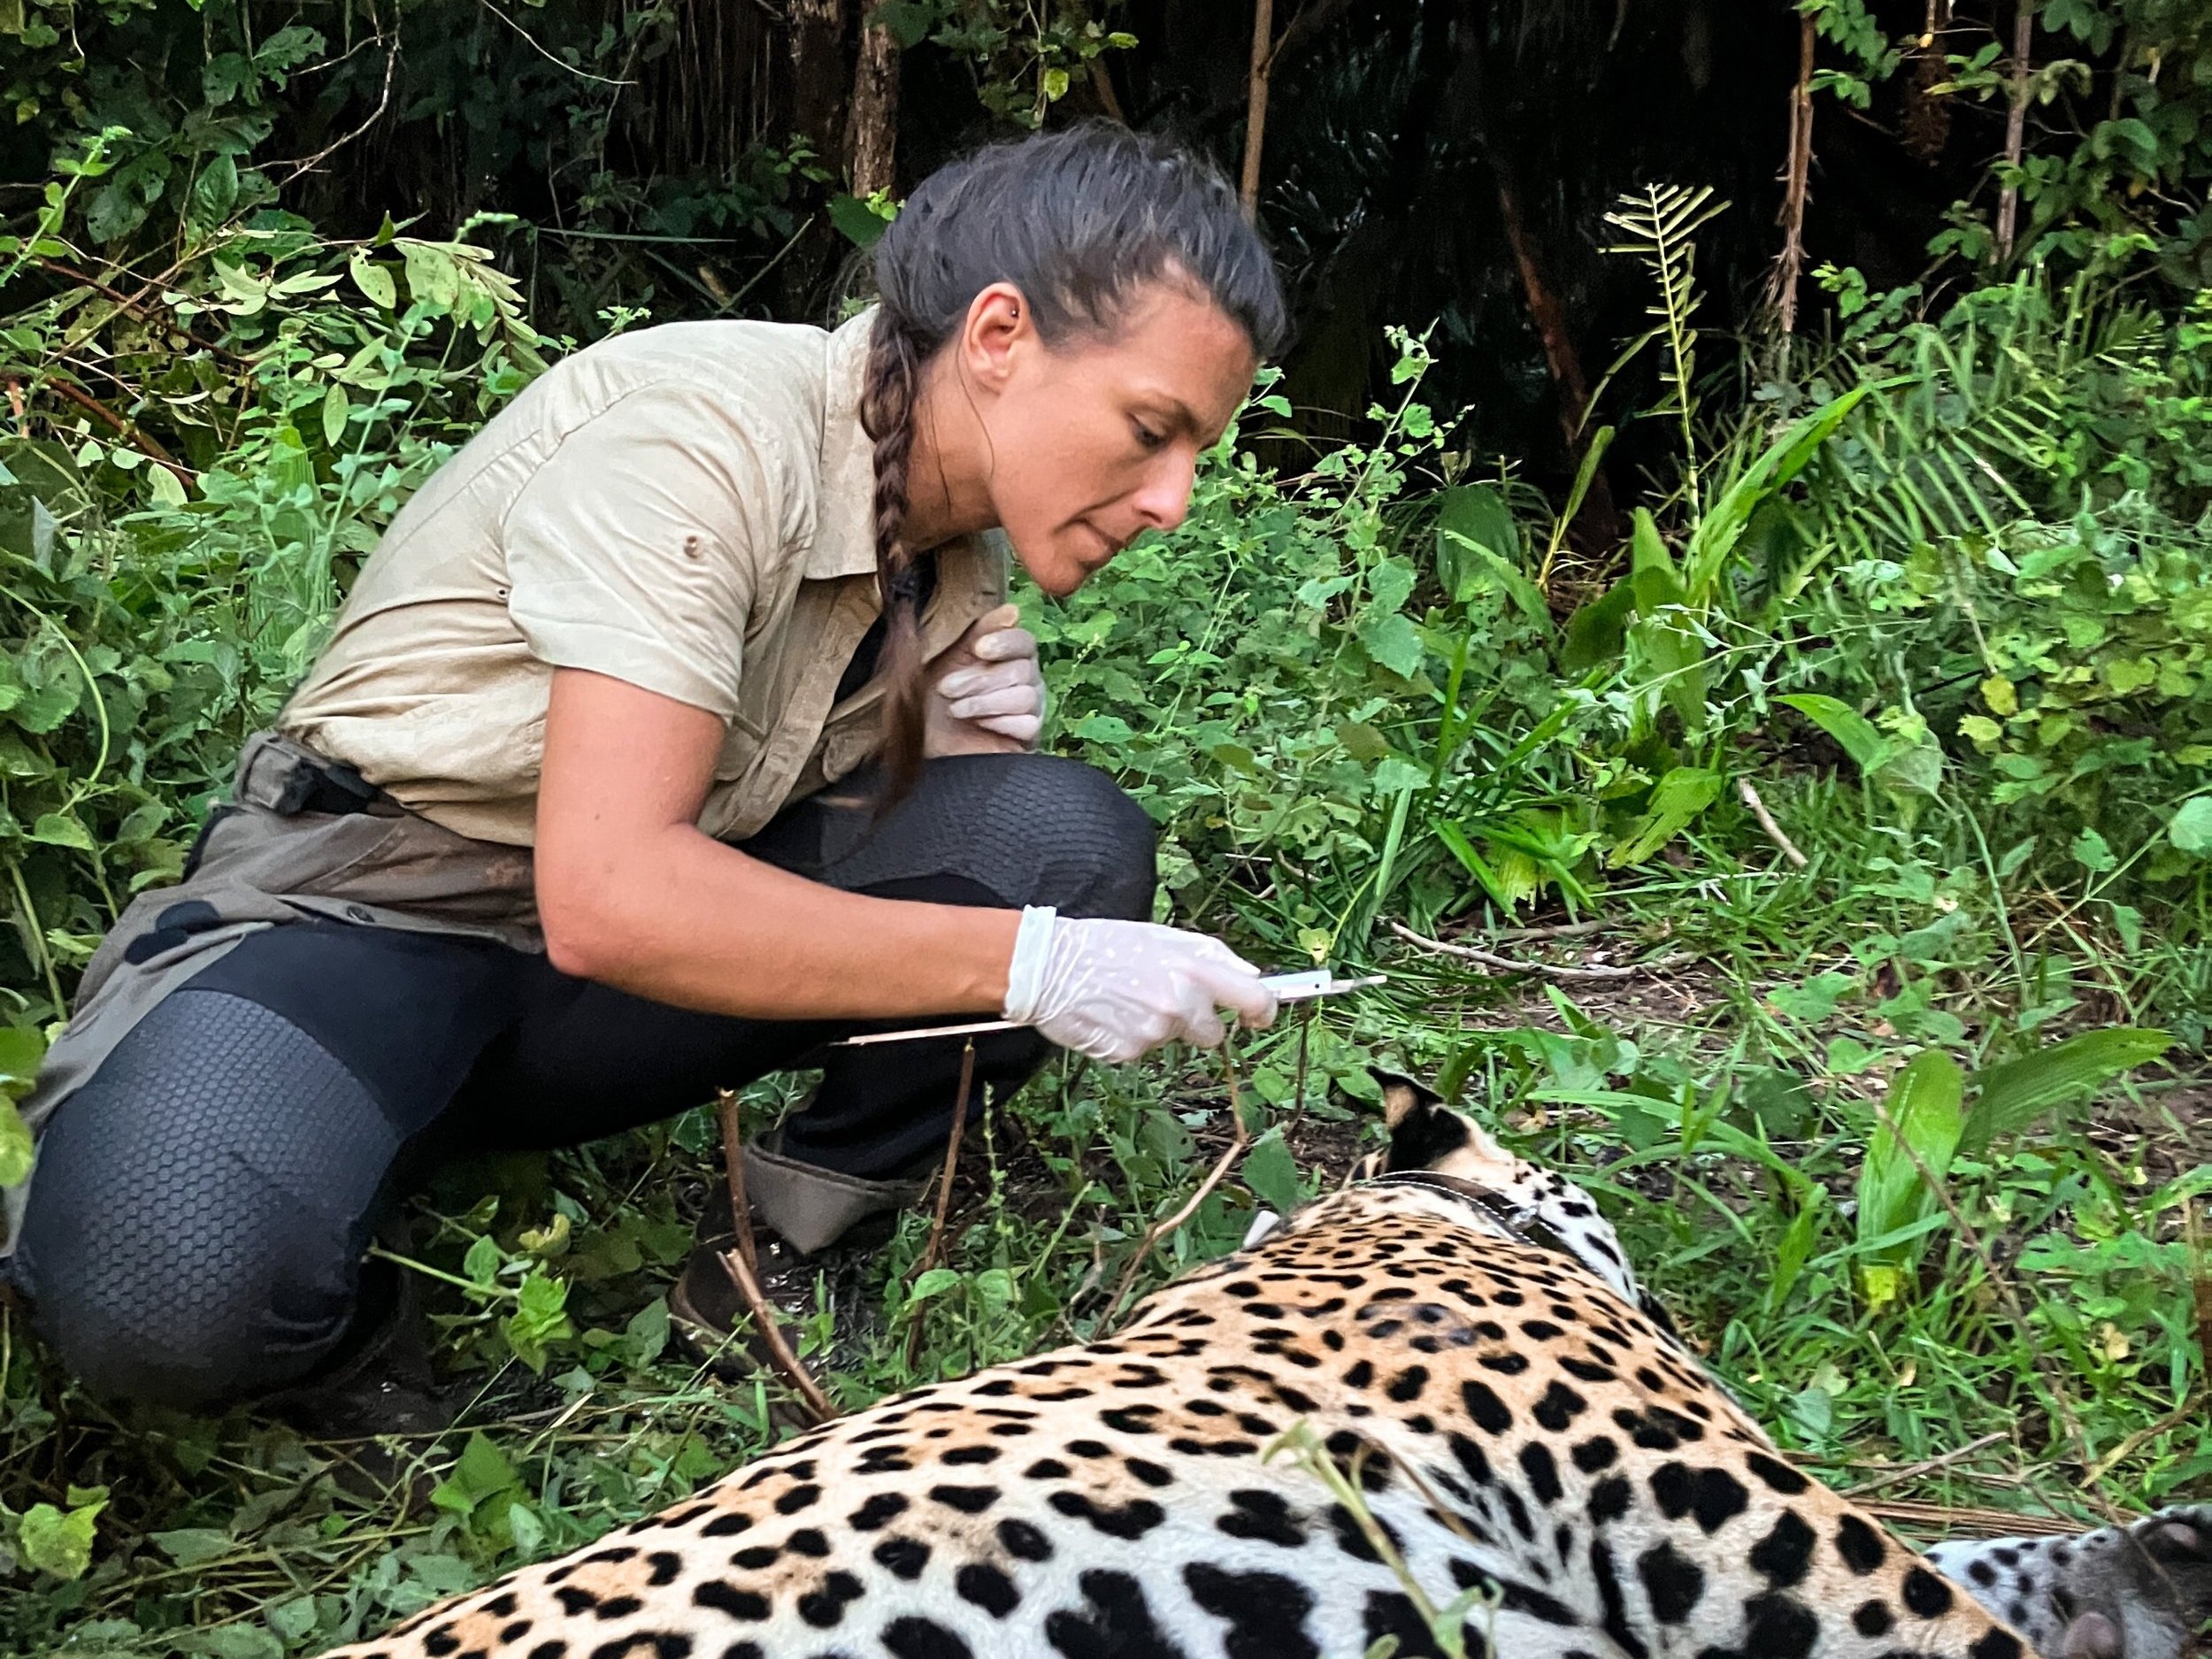 Tagging+a+Jaguar+in+the+Pantanal.jpg